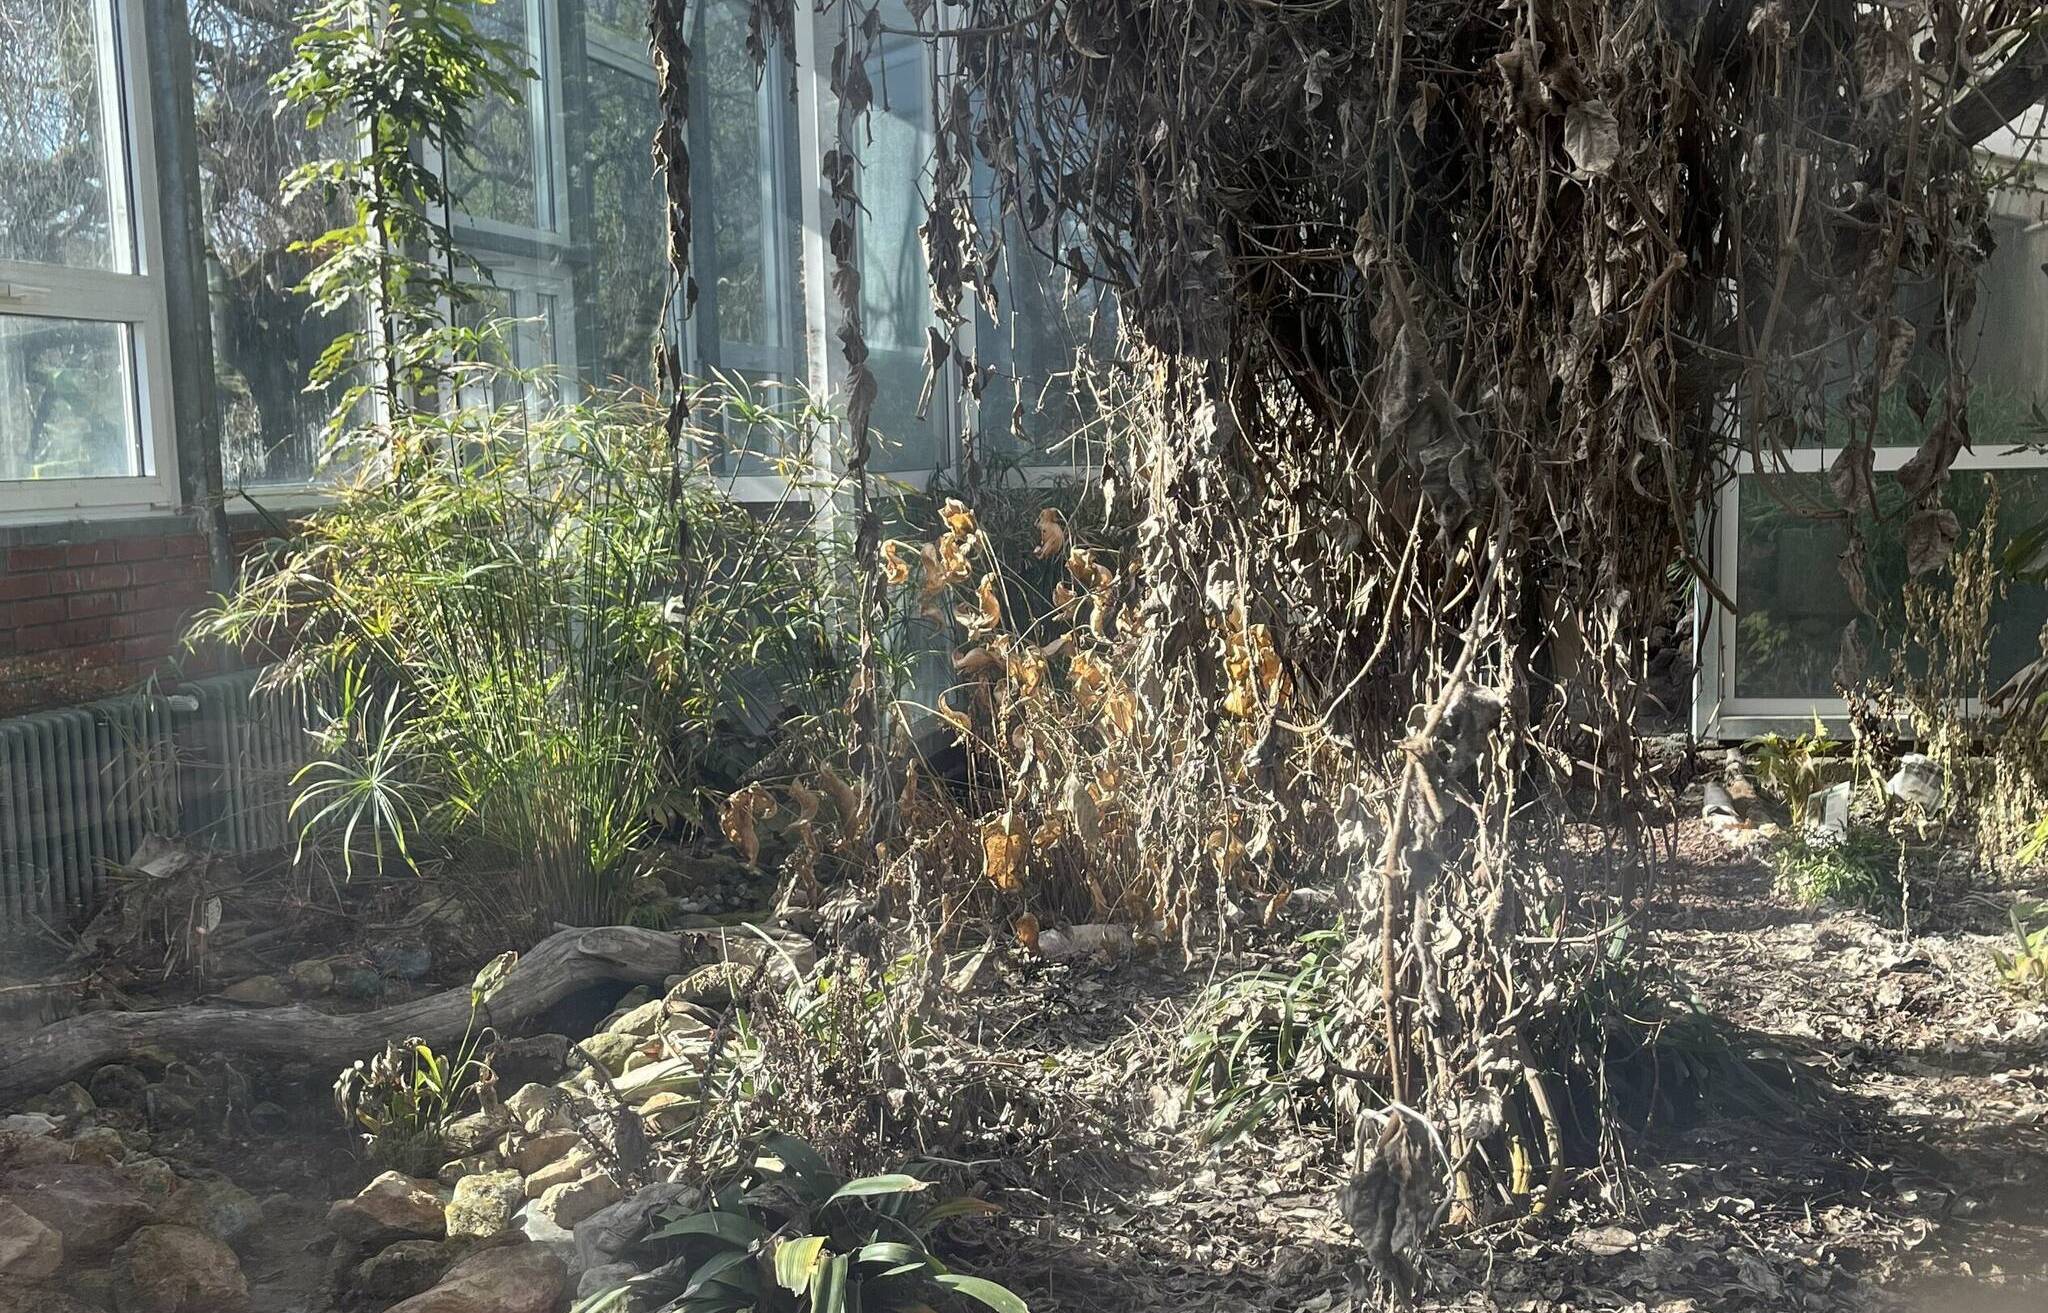   Ein trauriger Anblick: Die meisten Pflanzen im Gewächshaus des Botanischen Gartens sind vertrocknet. 